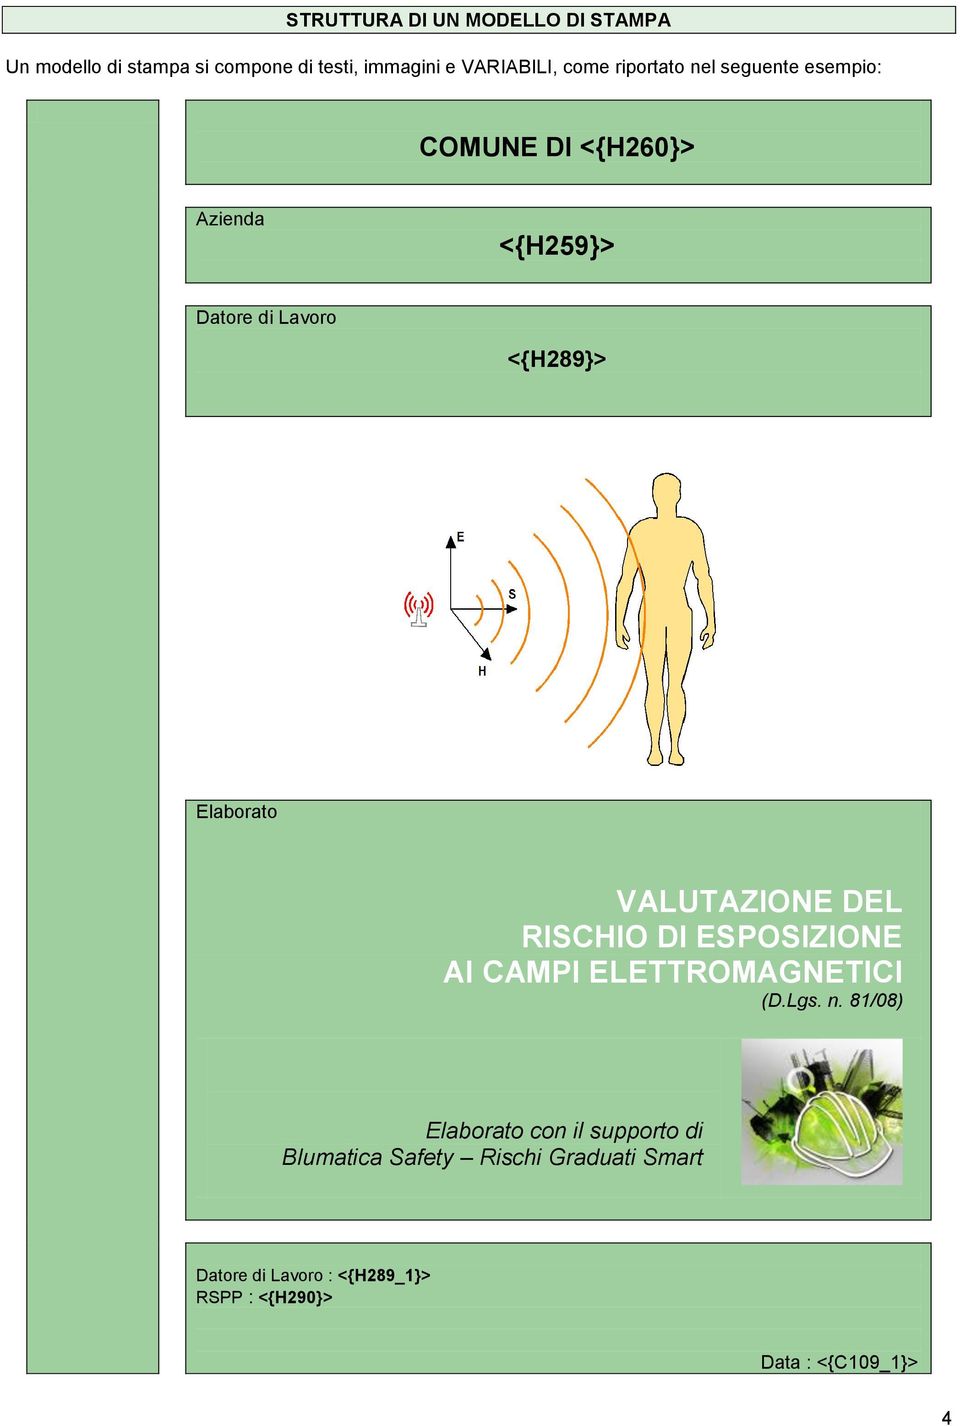 VALUTAZIONE DEL RISCHIO DI ESPOSIZIONE AI CAMPI ELETTROMAGNETICI (D.Lgs. n.